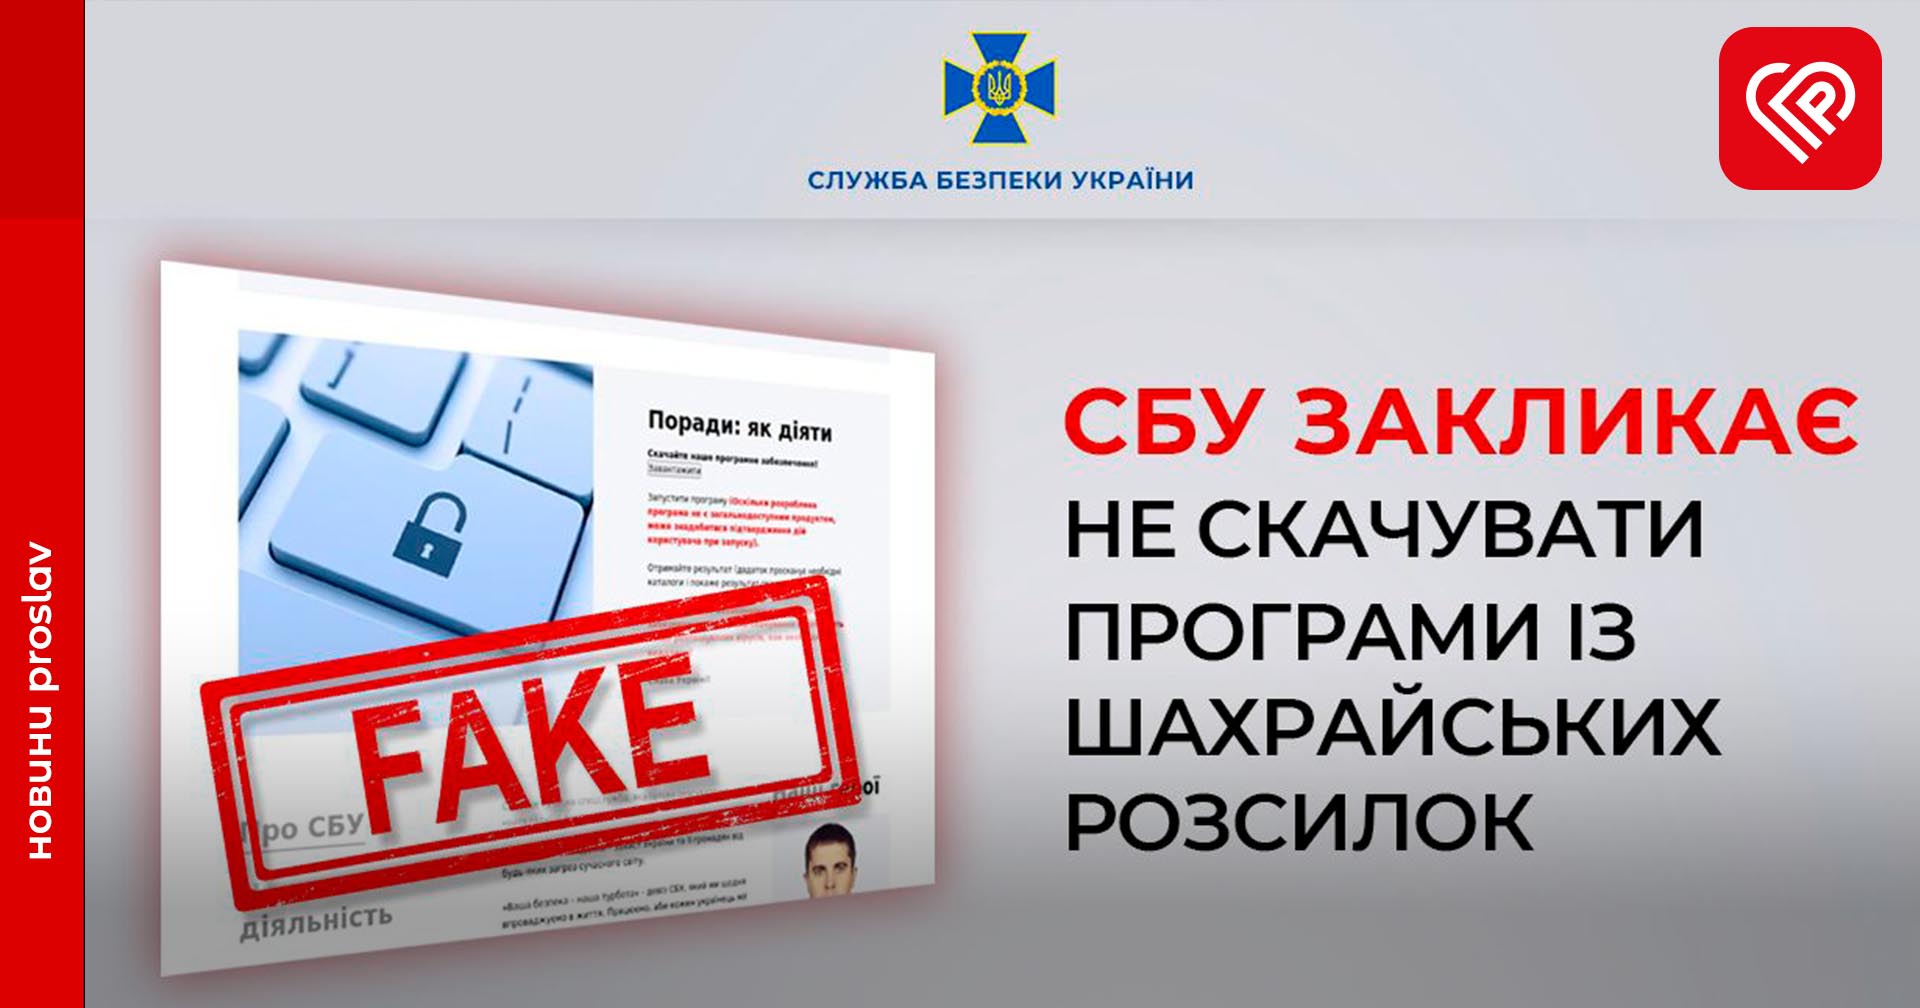 У Службі безпеки України закликали не завантажувати програм із шахрайських «розсилок» начебто від її імені